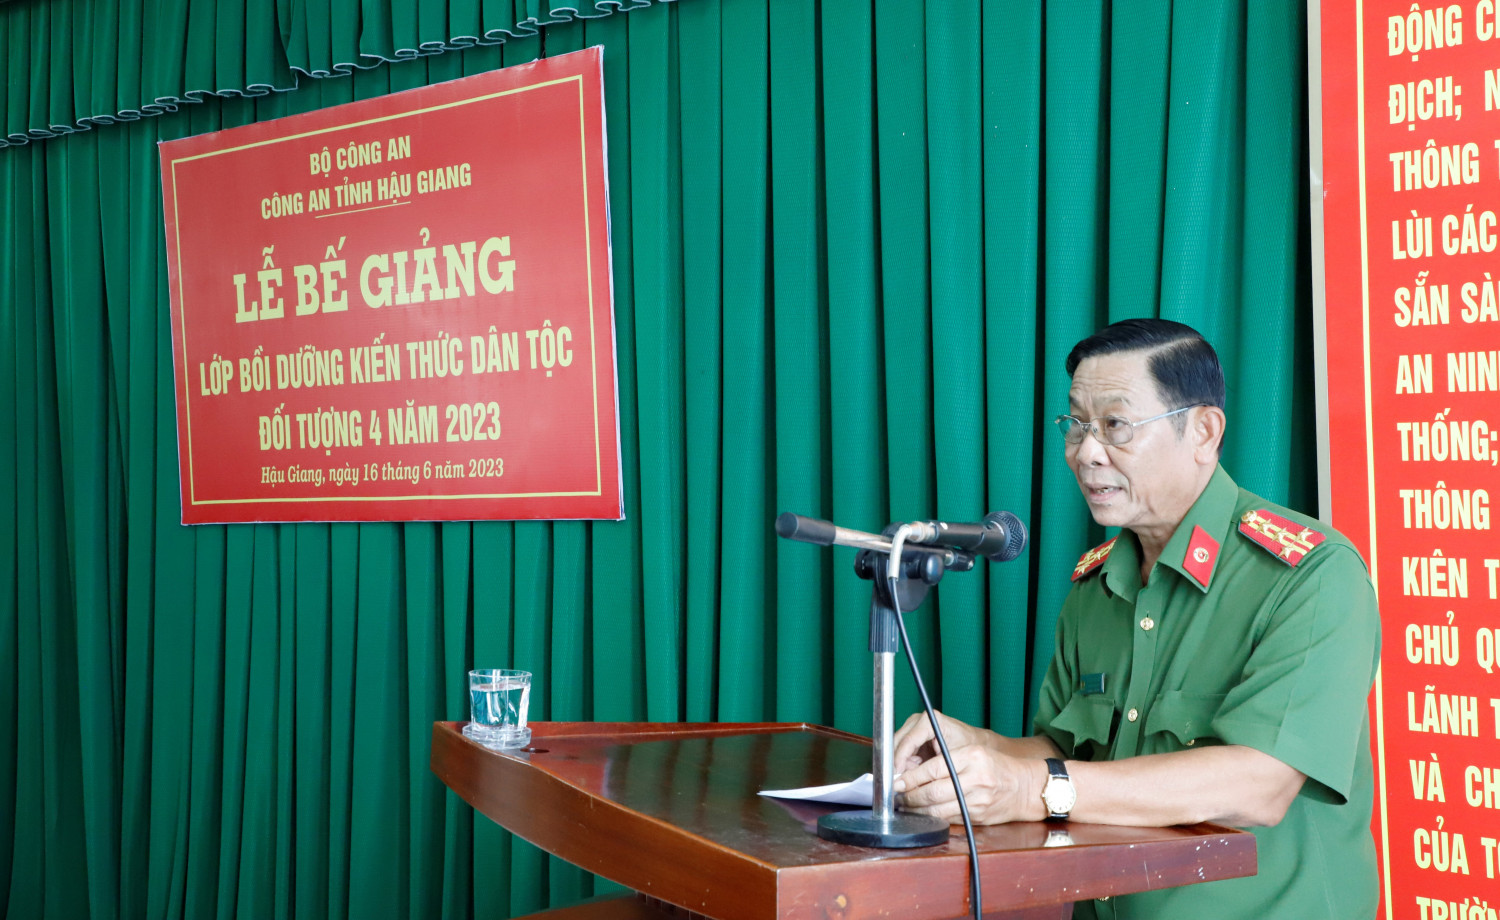 Đại tá Phan Văn Giữ, Ủy viên Ban Thường vụ Đảng ủy, Phó Giám đốc Công an tỉnh phát biểu chỉ đạo tại lễ bế giảng